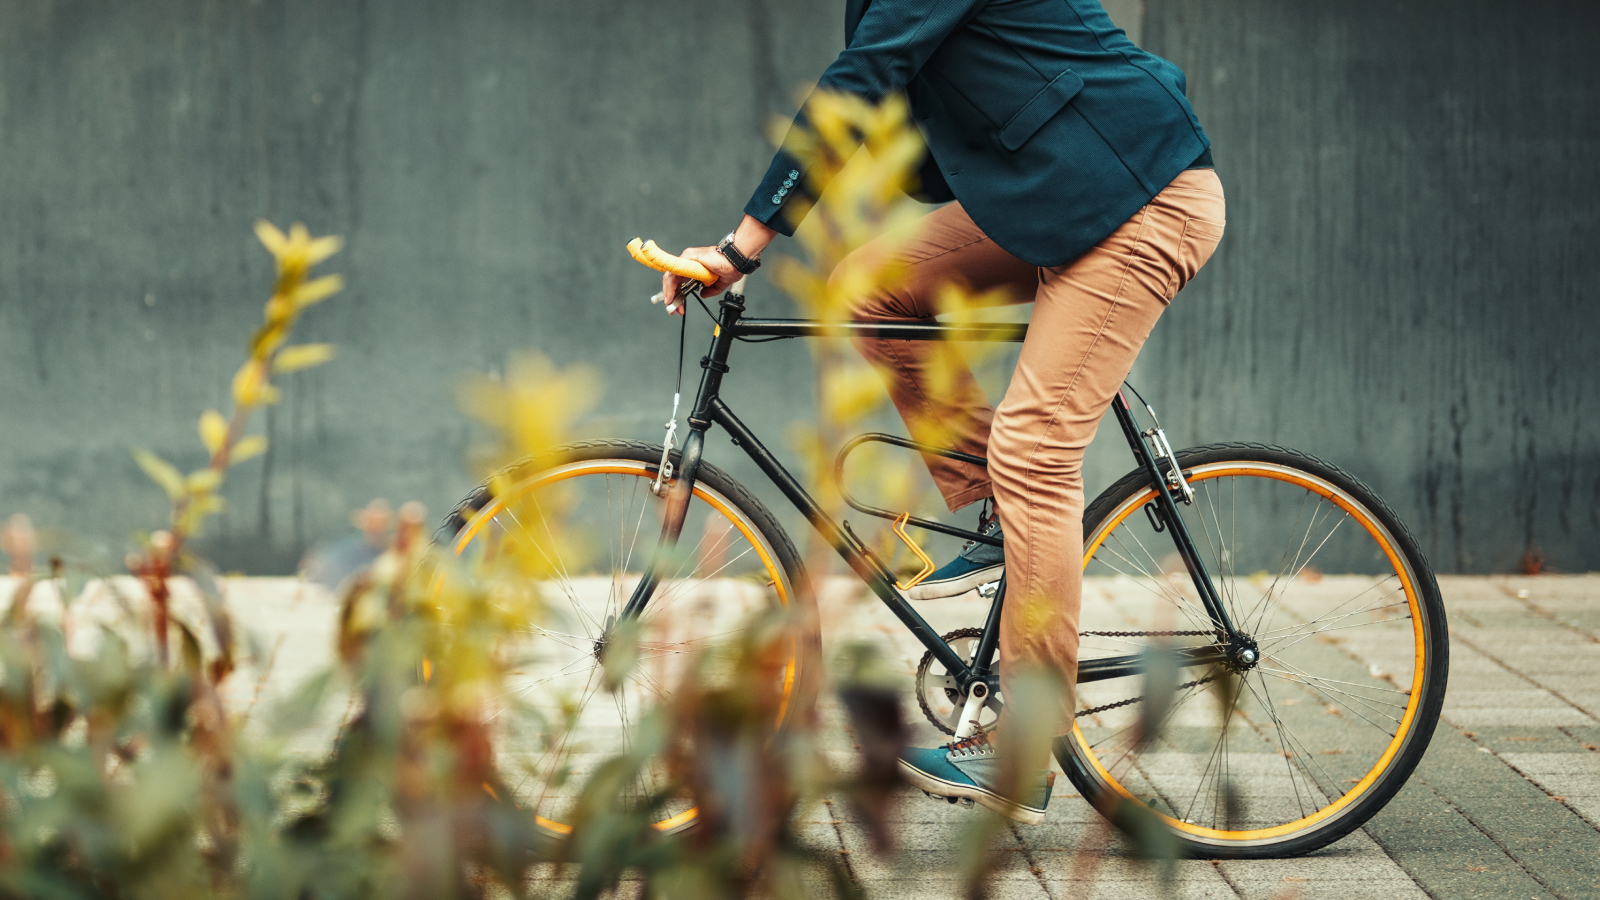 Read full post: Le vélo chez iAdvize : promouvoir la mobilité durable et collective